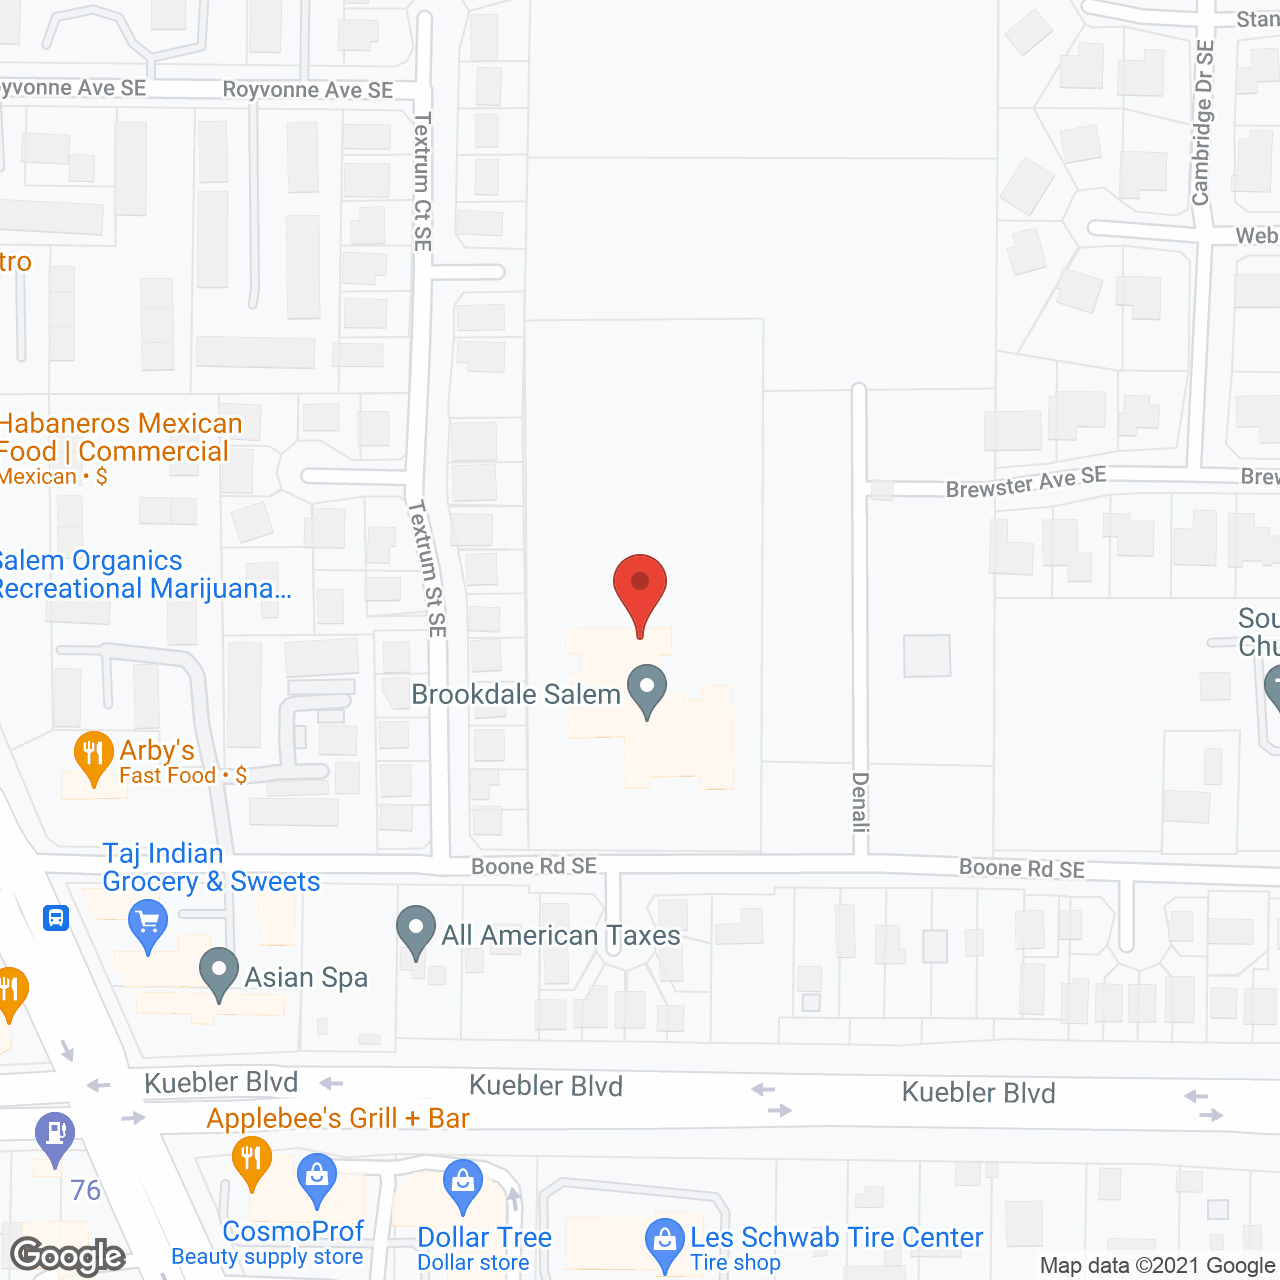 Brookdale Salem in google map